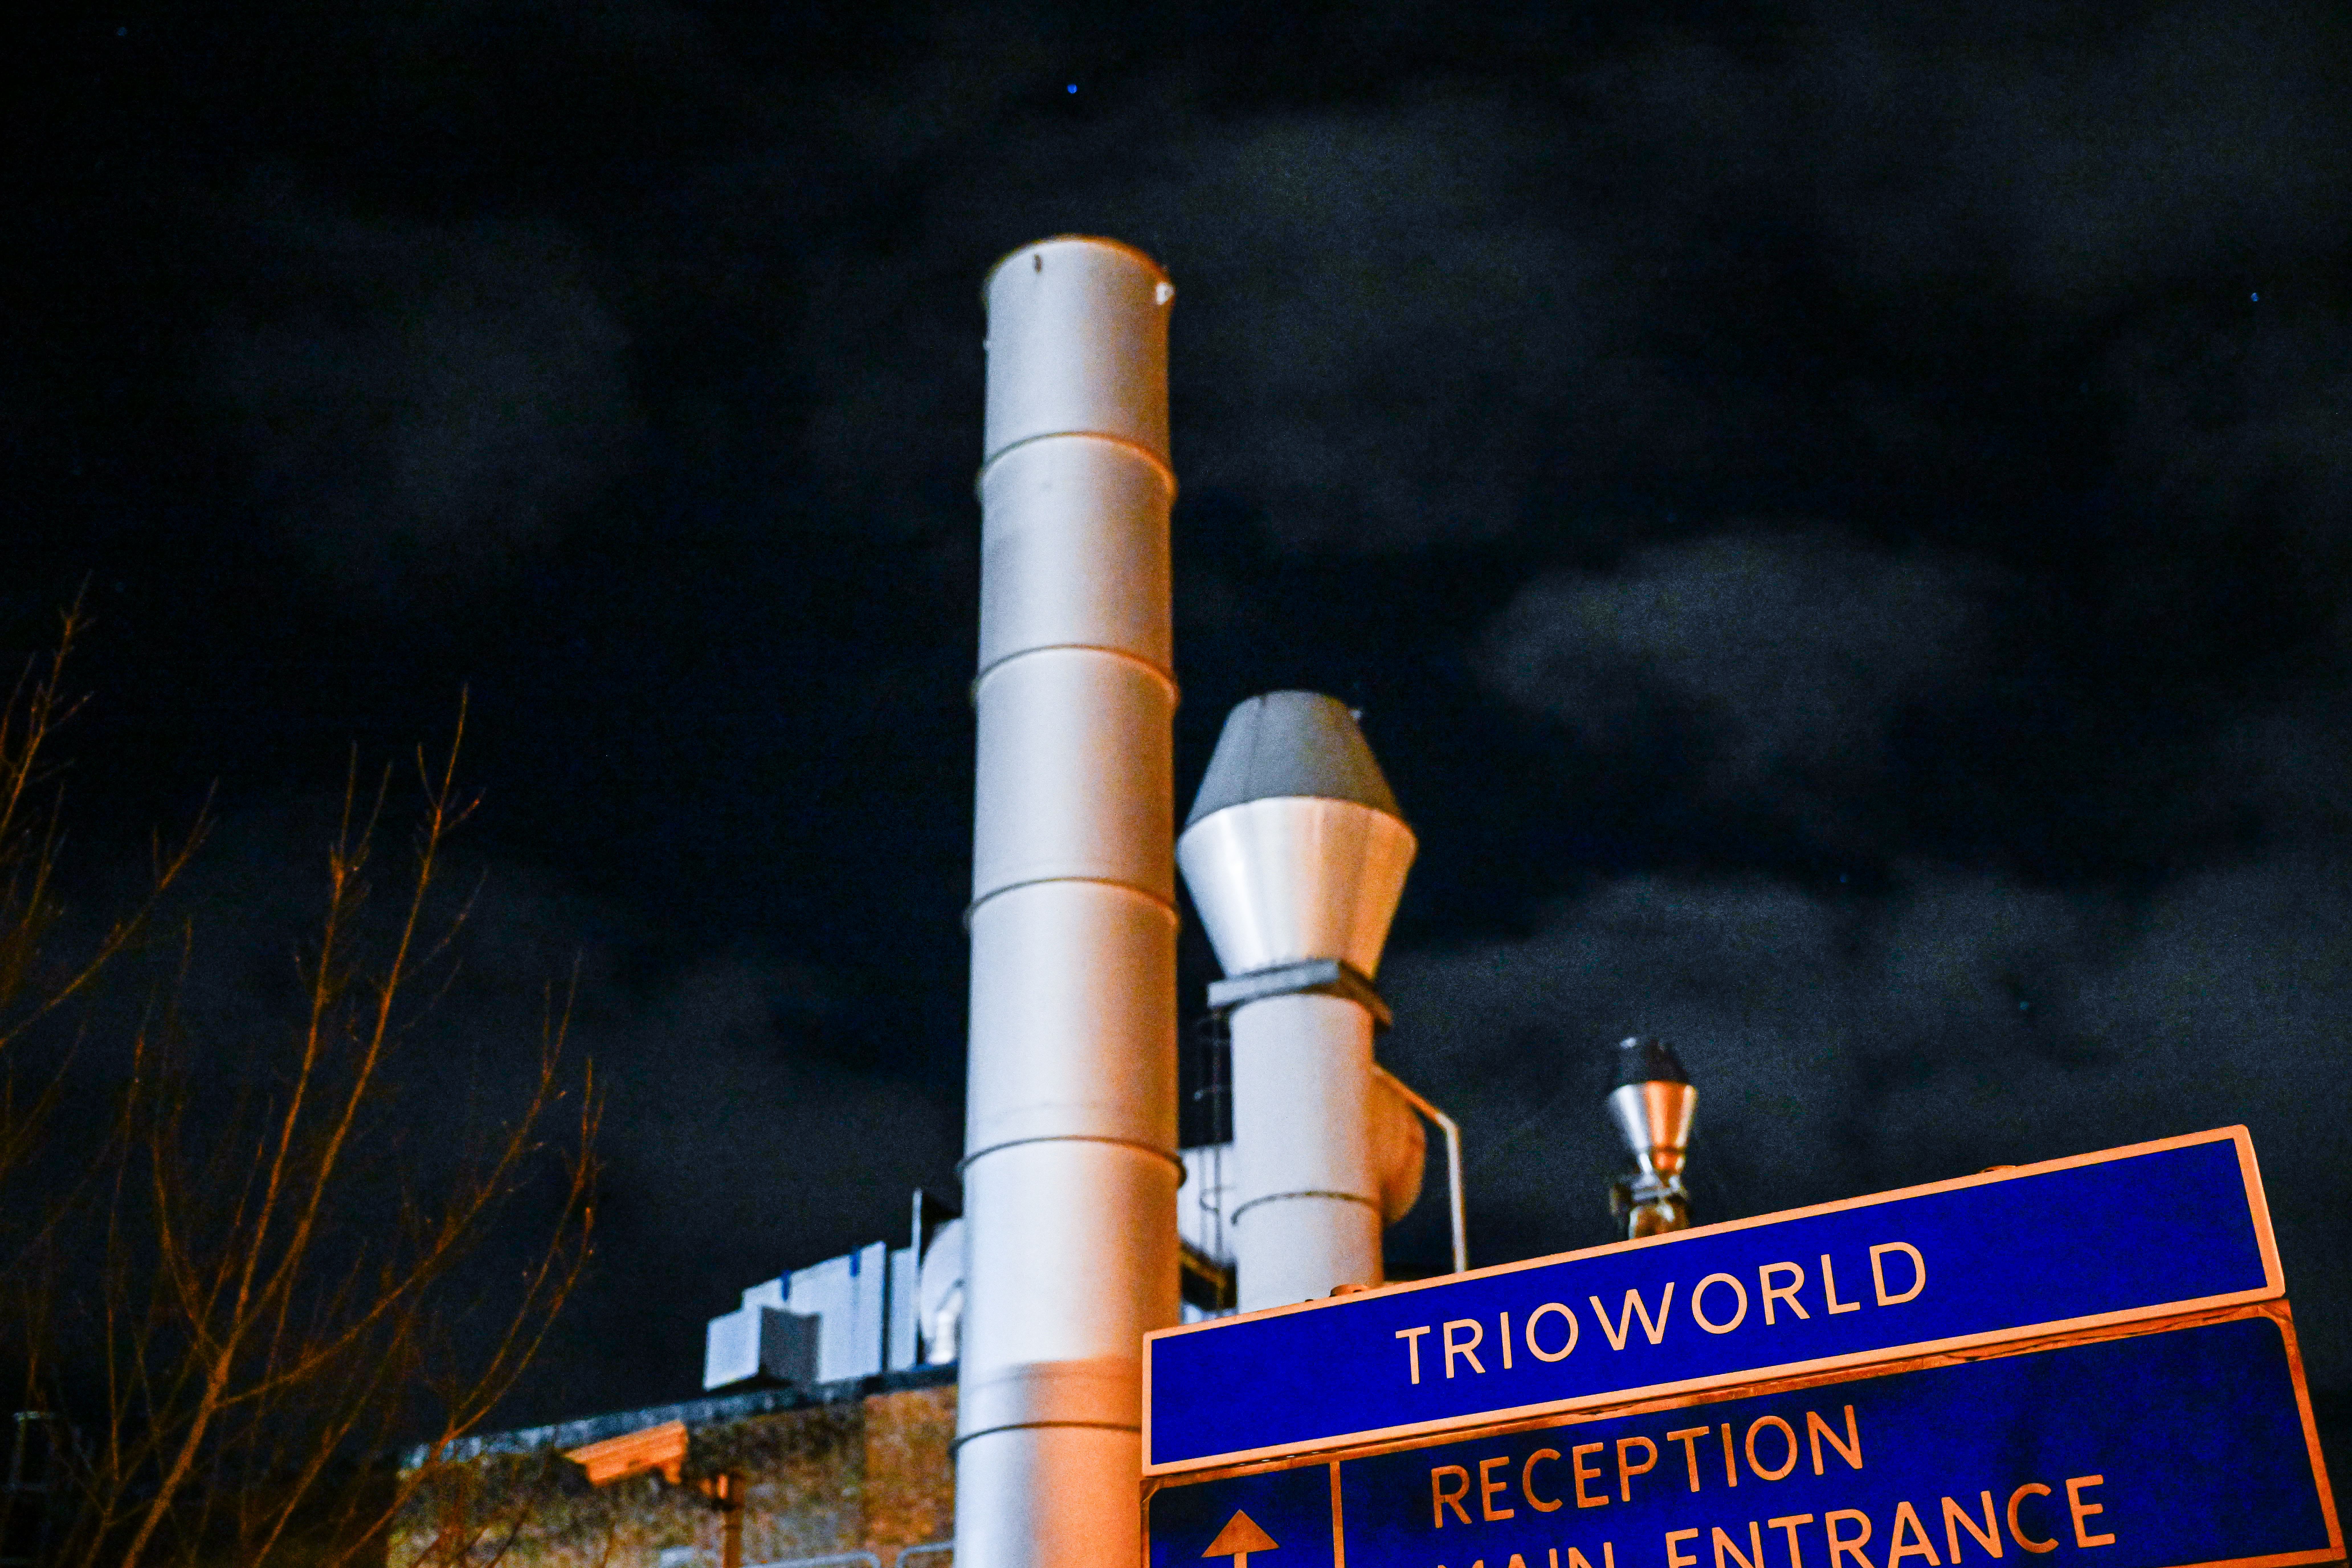 130 anställda berörs när Trioworld stänger sin fabrik i Landskrona. Beskedet kom förra veckan.